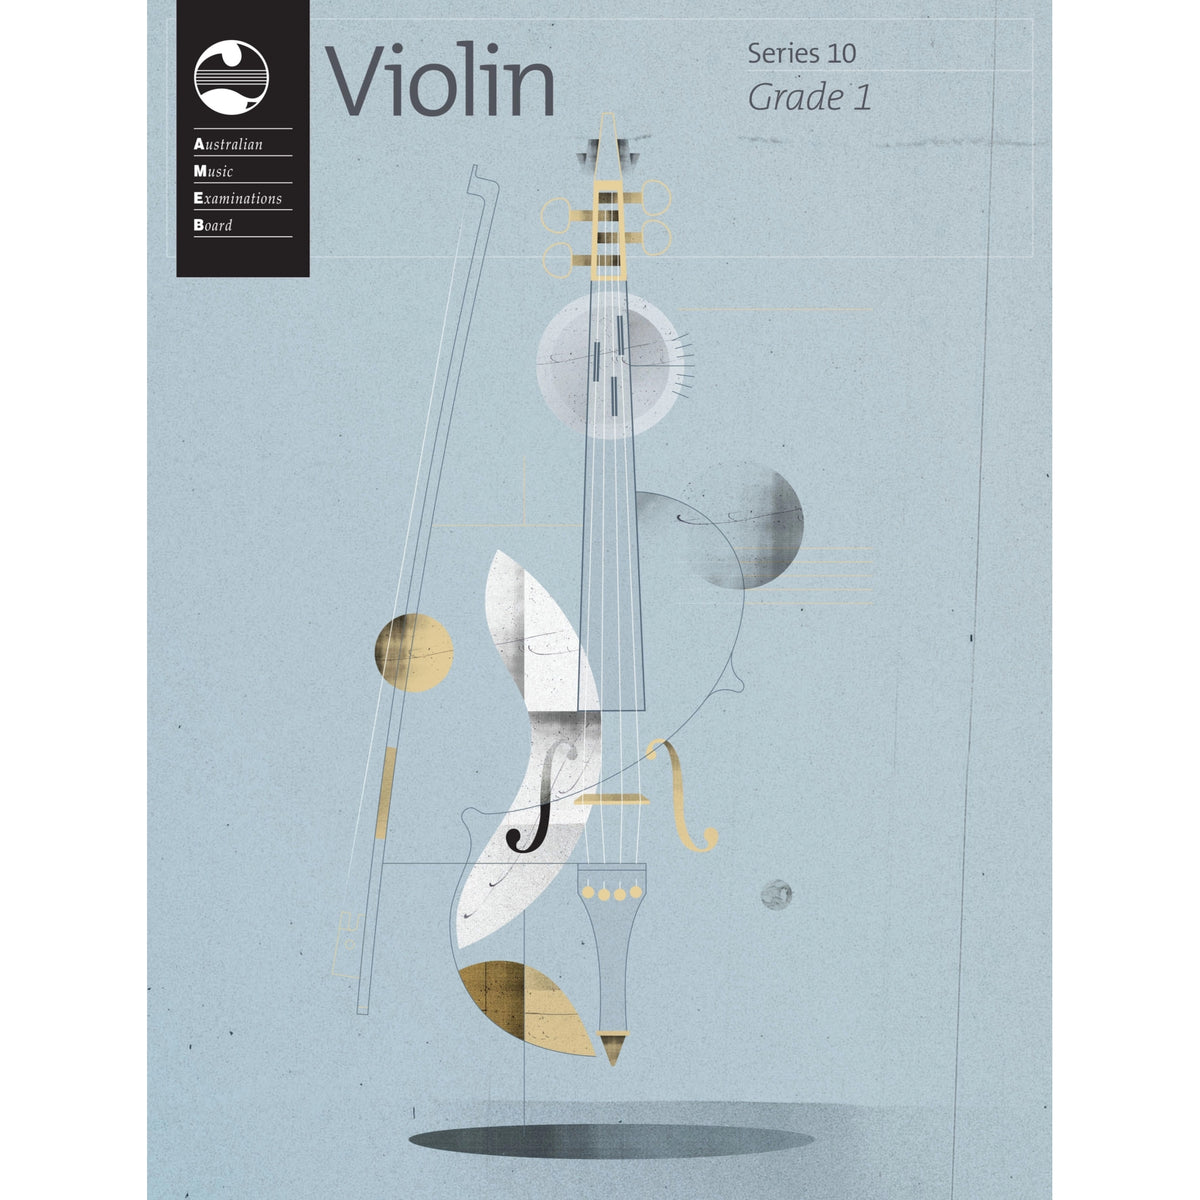 Violin Series 10 Grade 1